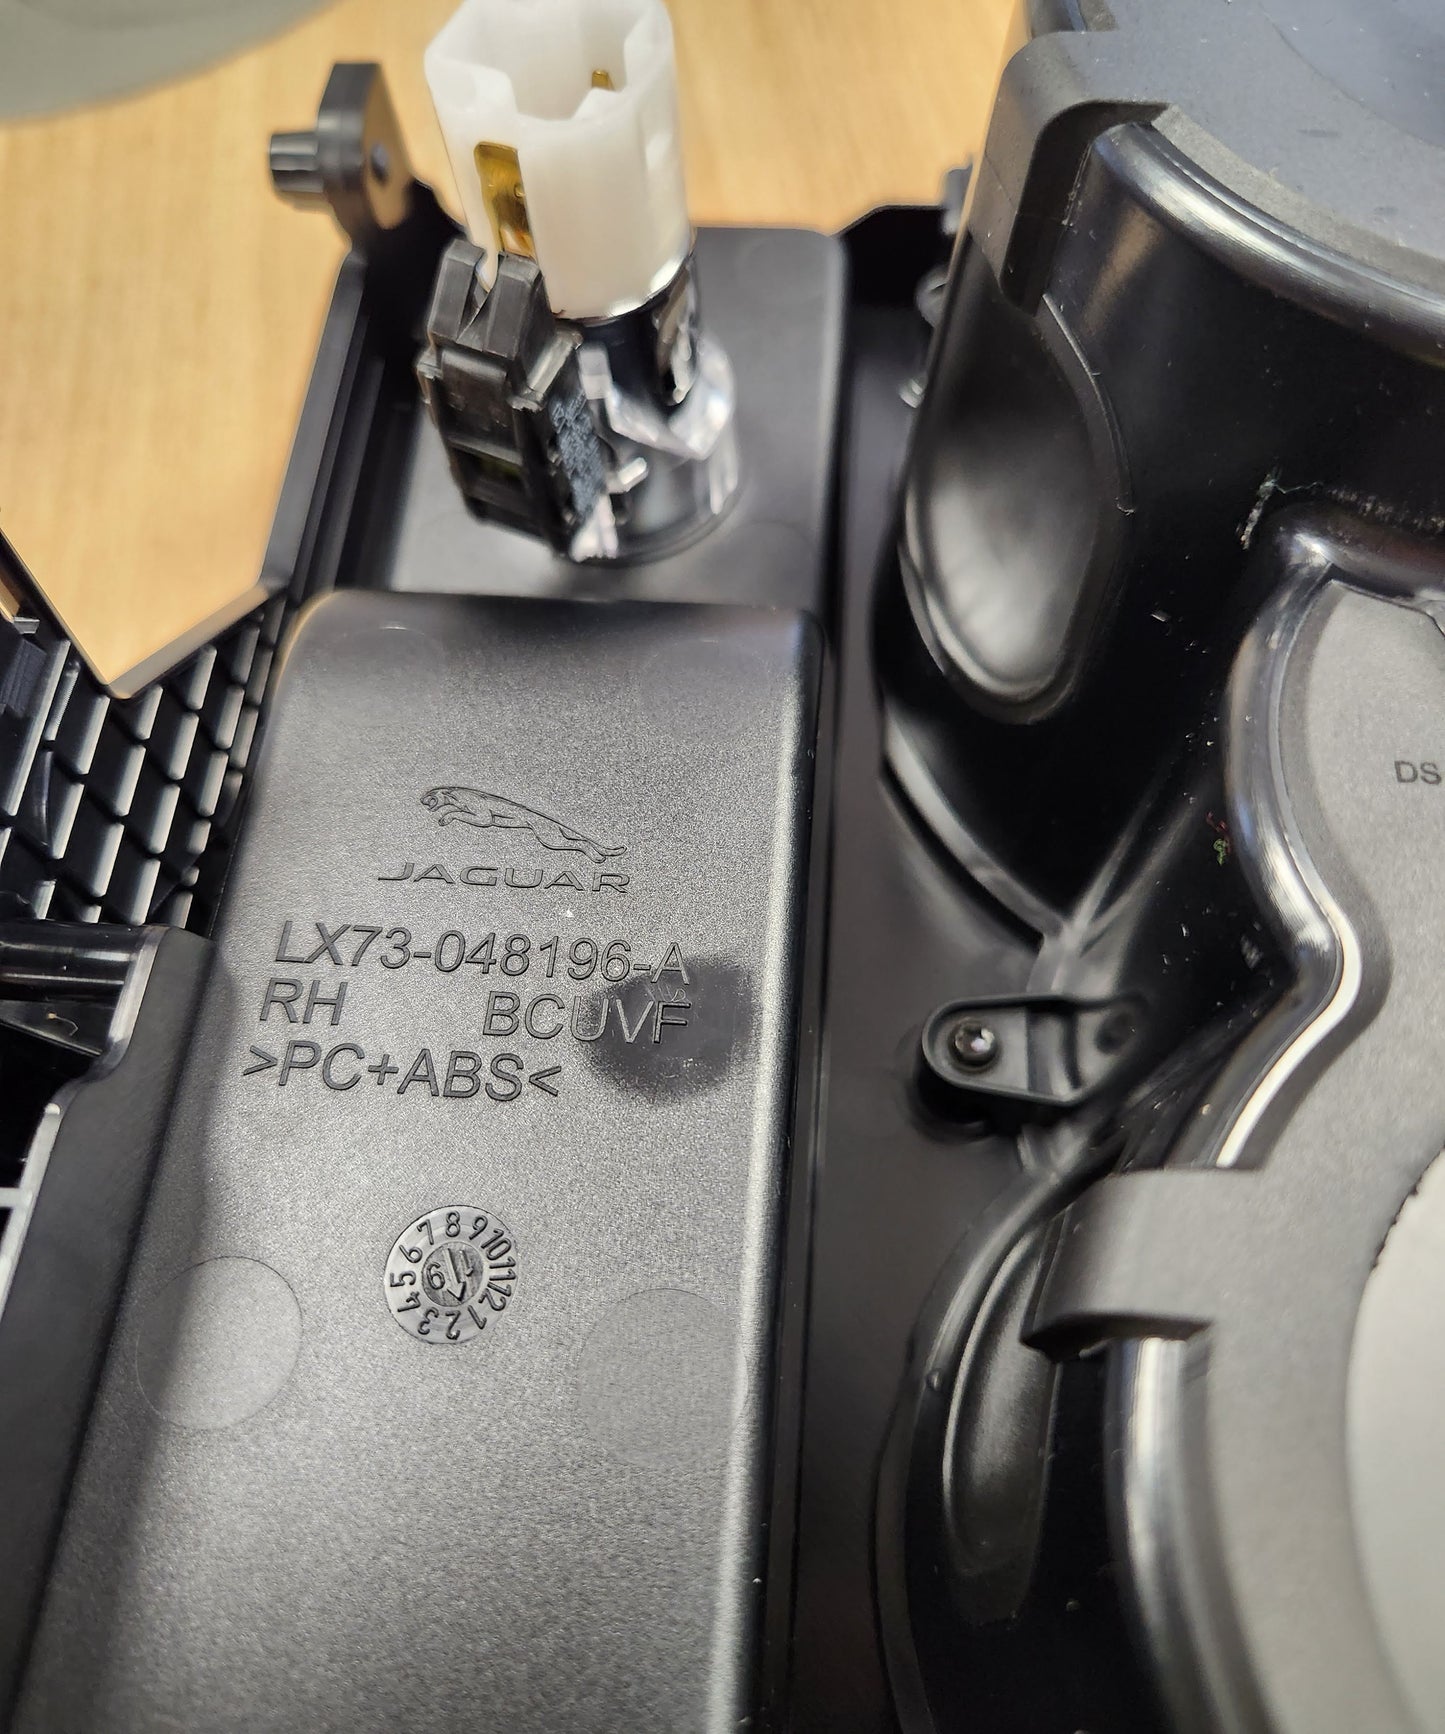 Console centrale del supporto per supporto per coppa Jaguar XE 2015> T4N35139 LX73048196AC